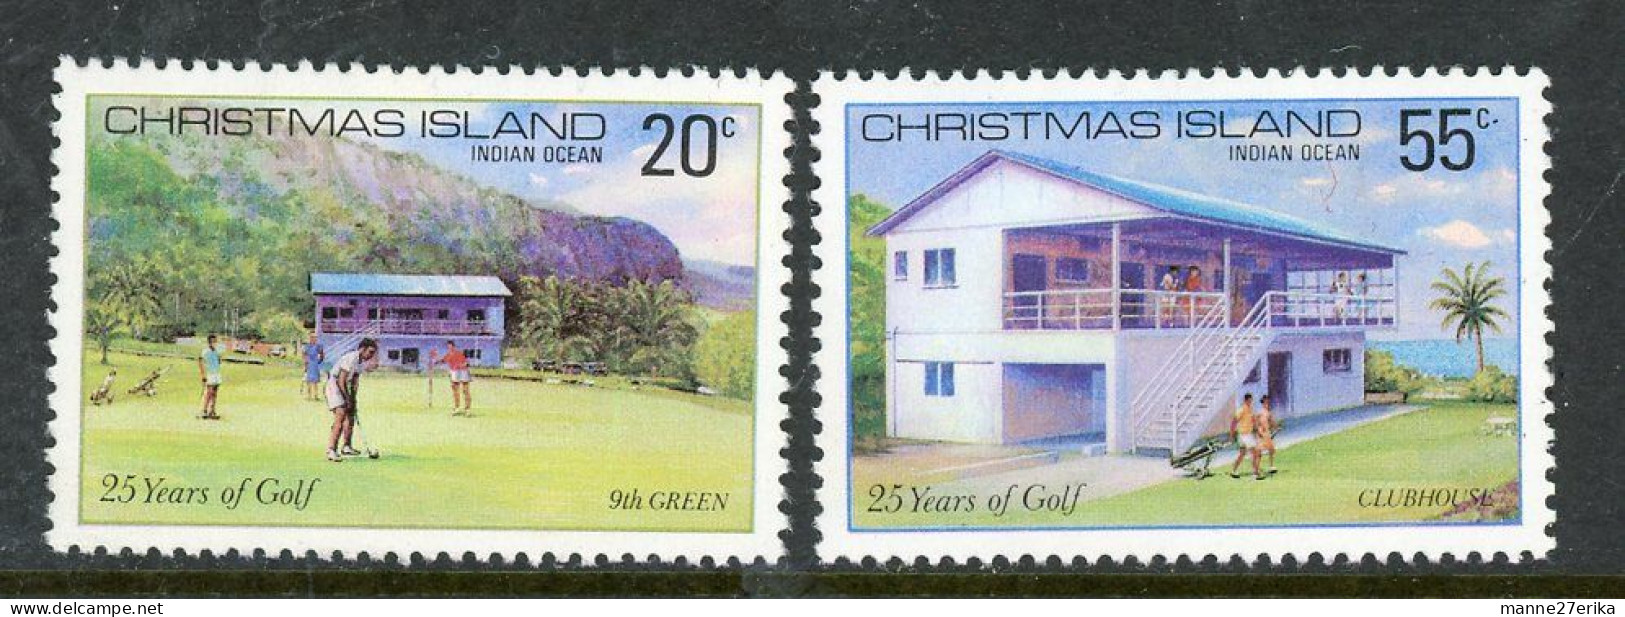 Christmas Islands MNH 1980 - Christmas Island